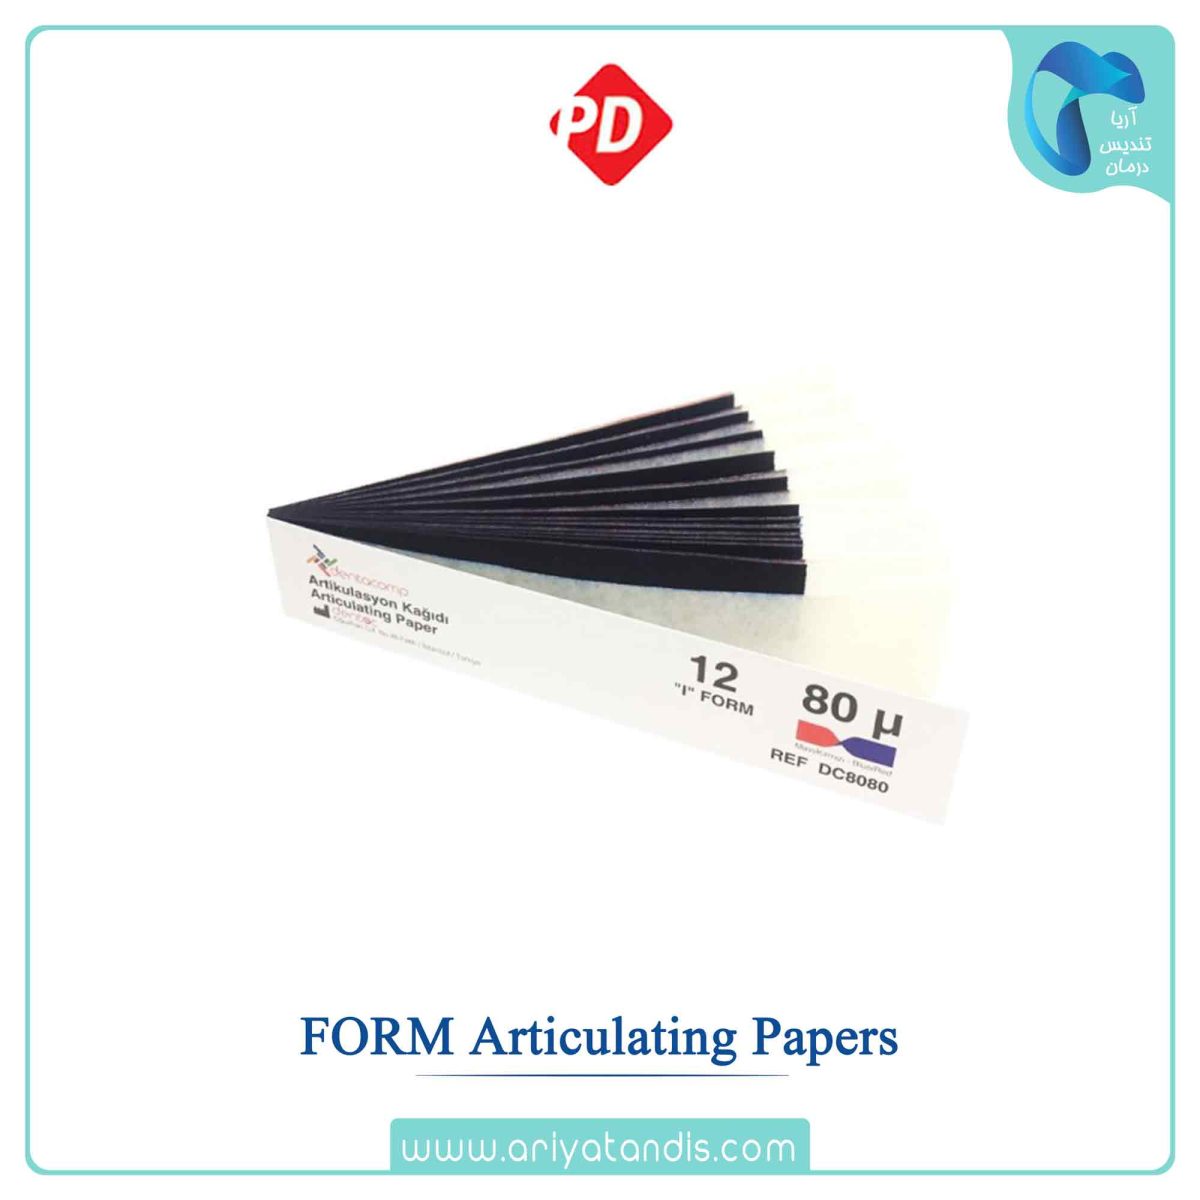 قیمت کاغذ آرتیکولاسیون/ کاربن دی پی، CEMEL /FORM Articulating Papers PD